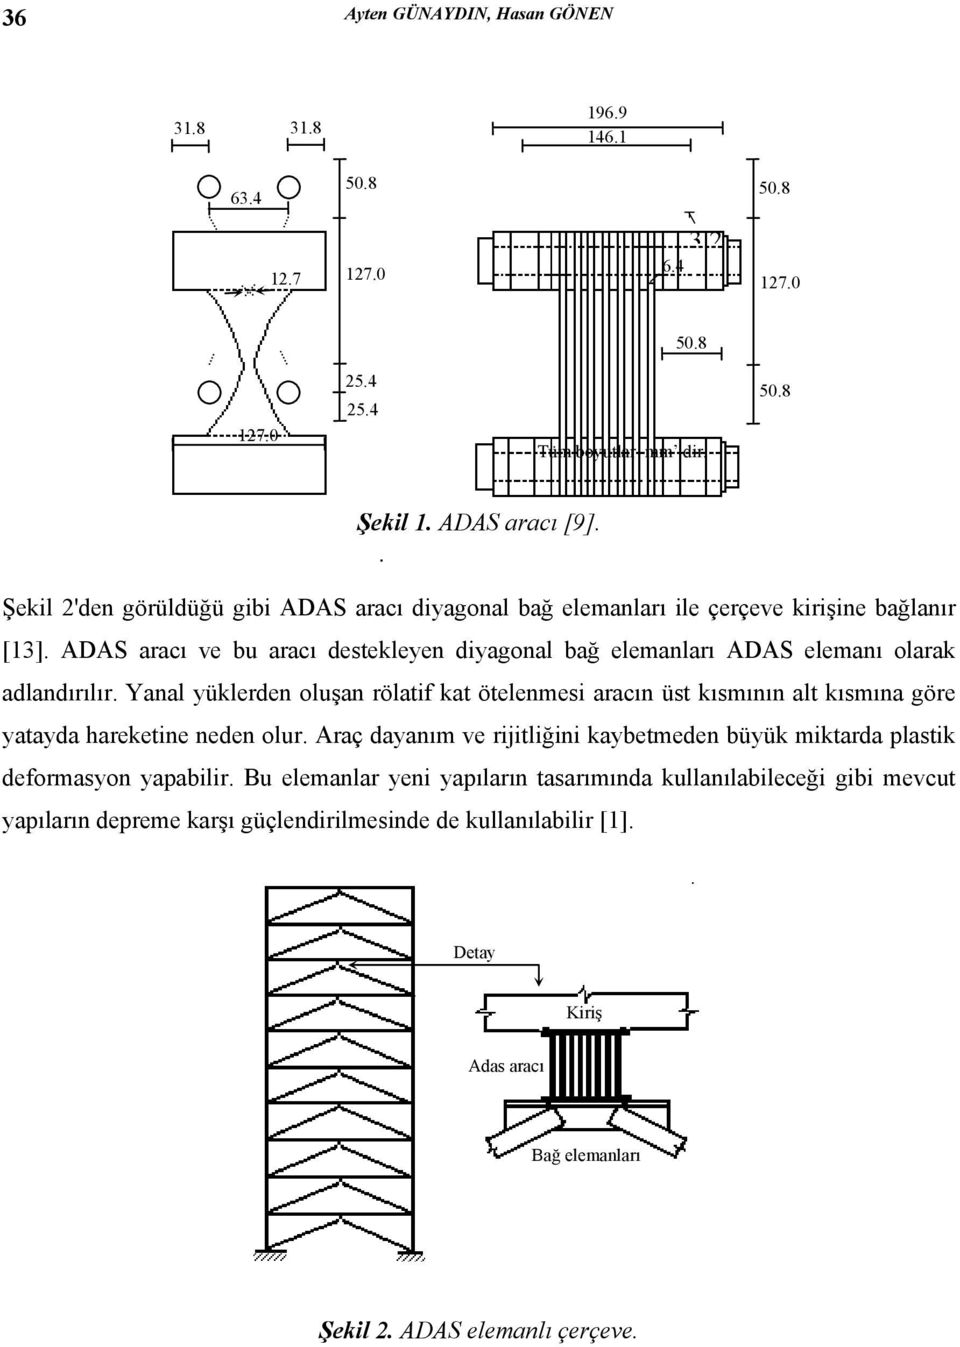 ADAS aracı ve bu aracı destekleyen diyagonal bağ elemanları ADAS elemanı olarak adlandırılır.